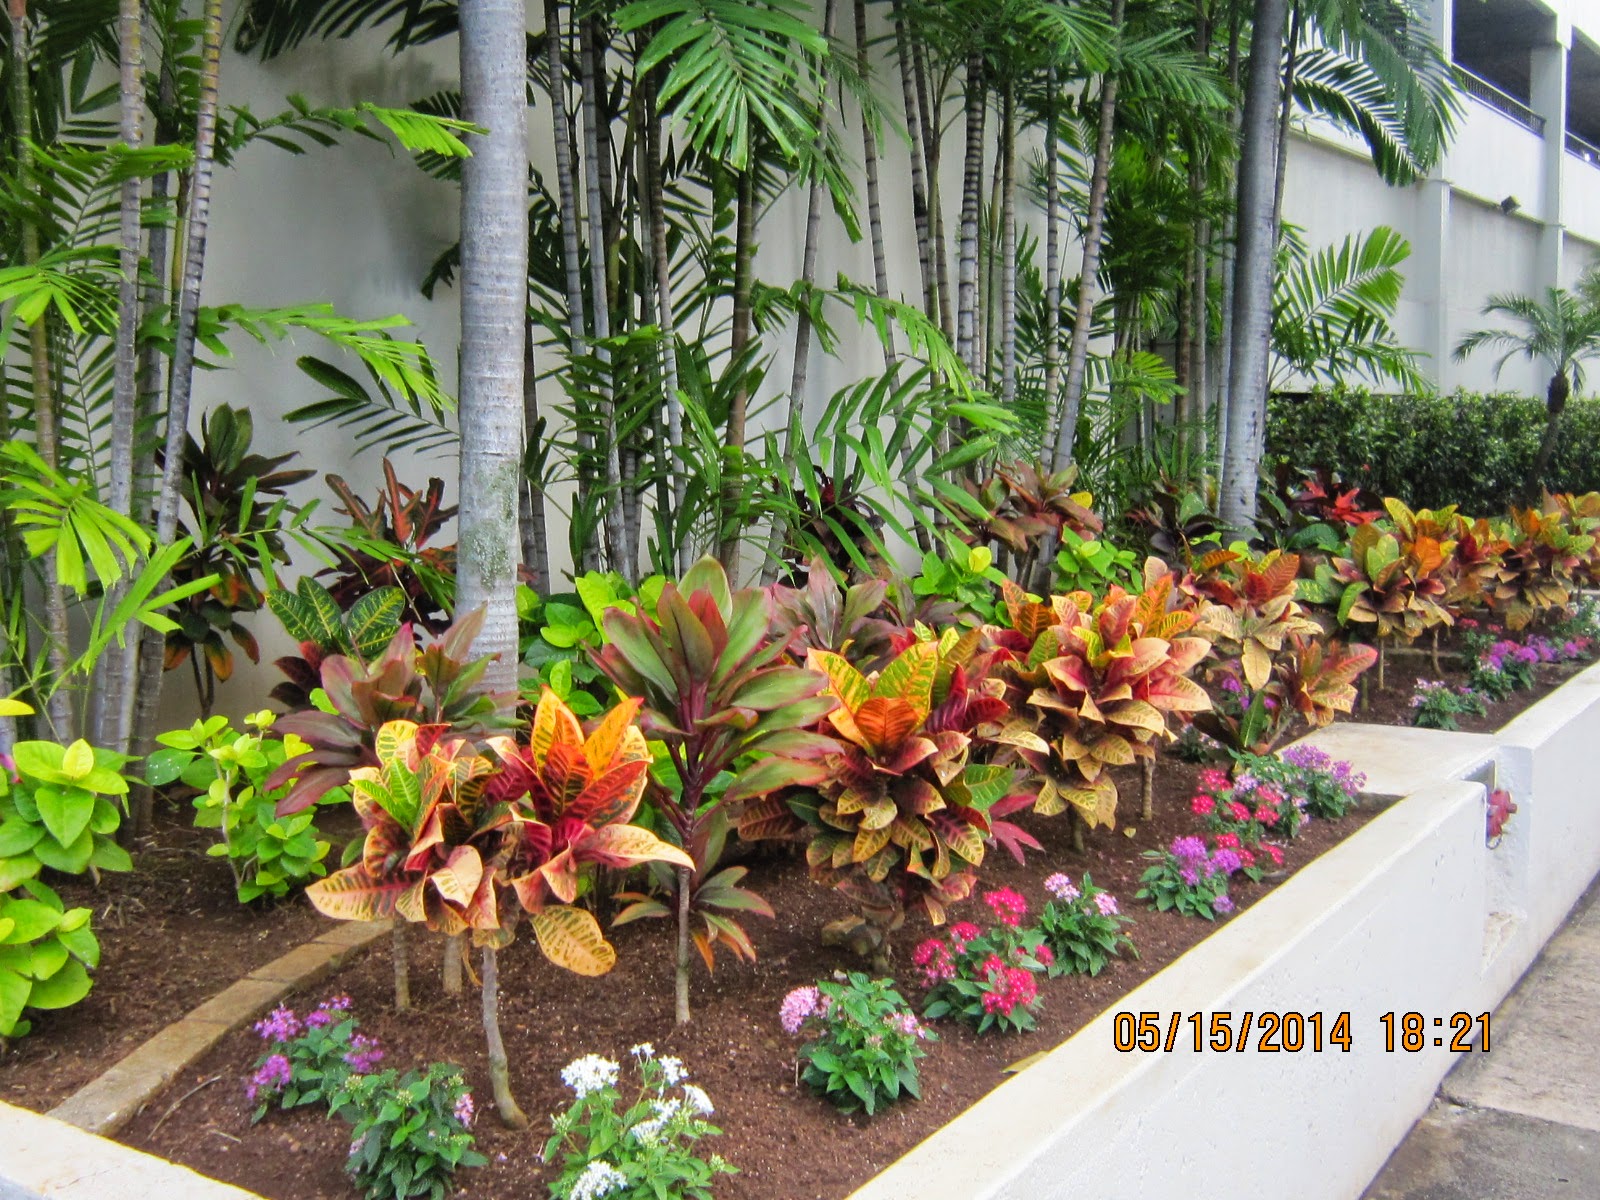 HAWAII PLANTS